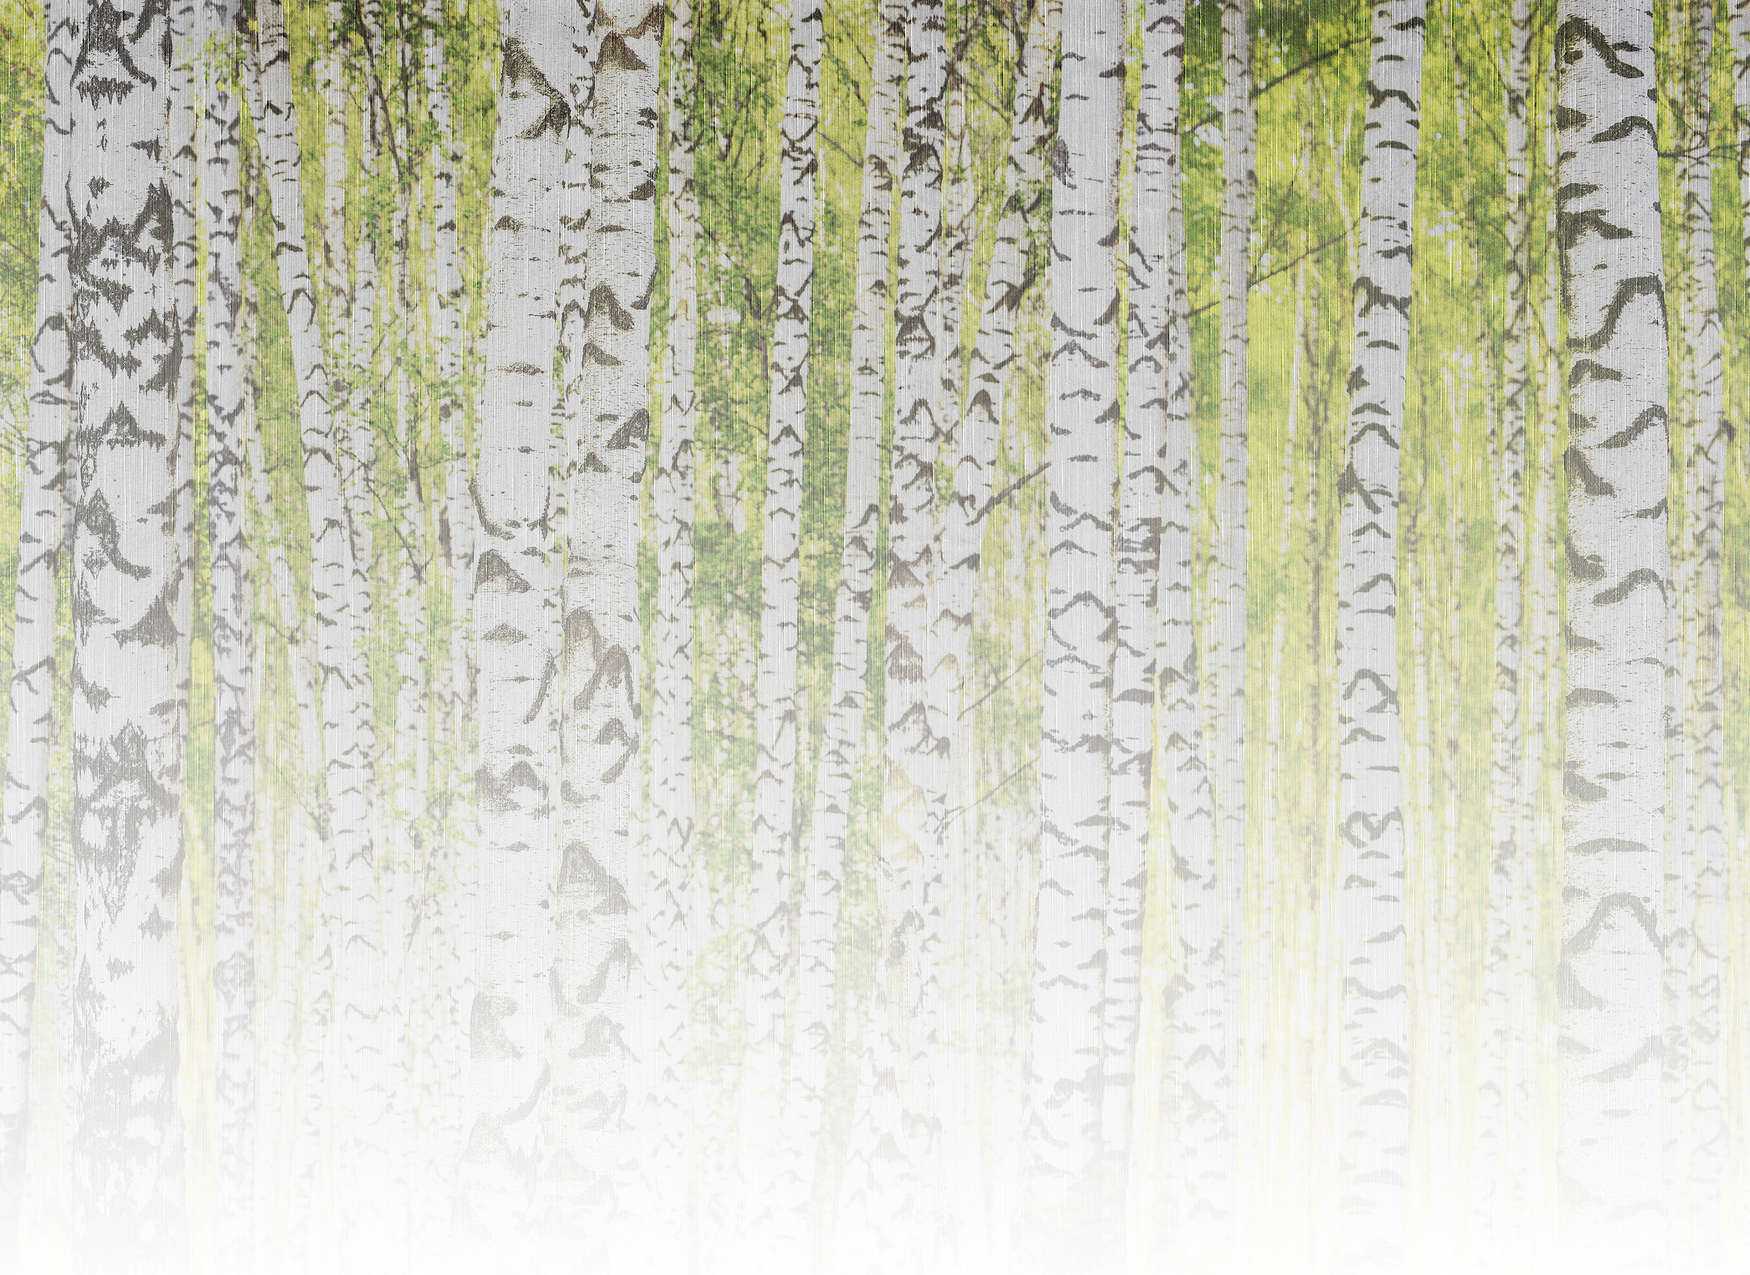             Fototapete mit Birkenwald in Leinenstruktur-Optik – Grün, Weiß, Schwarz
        